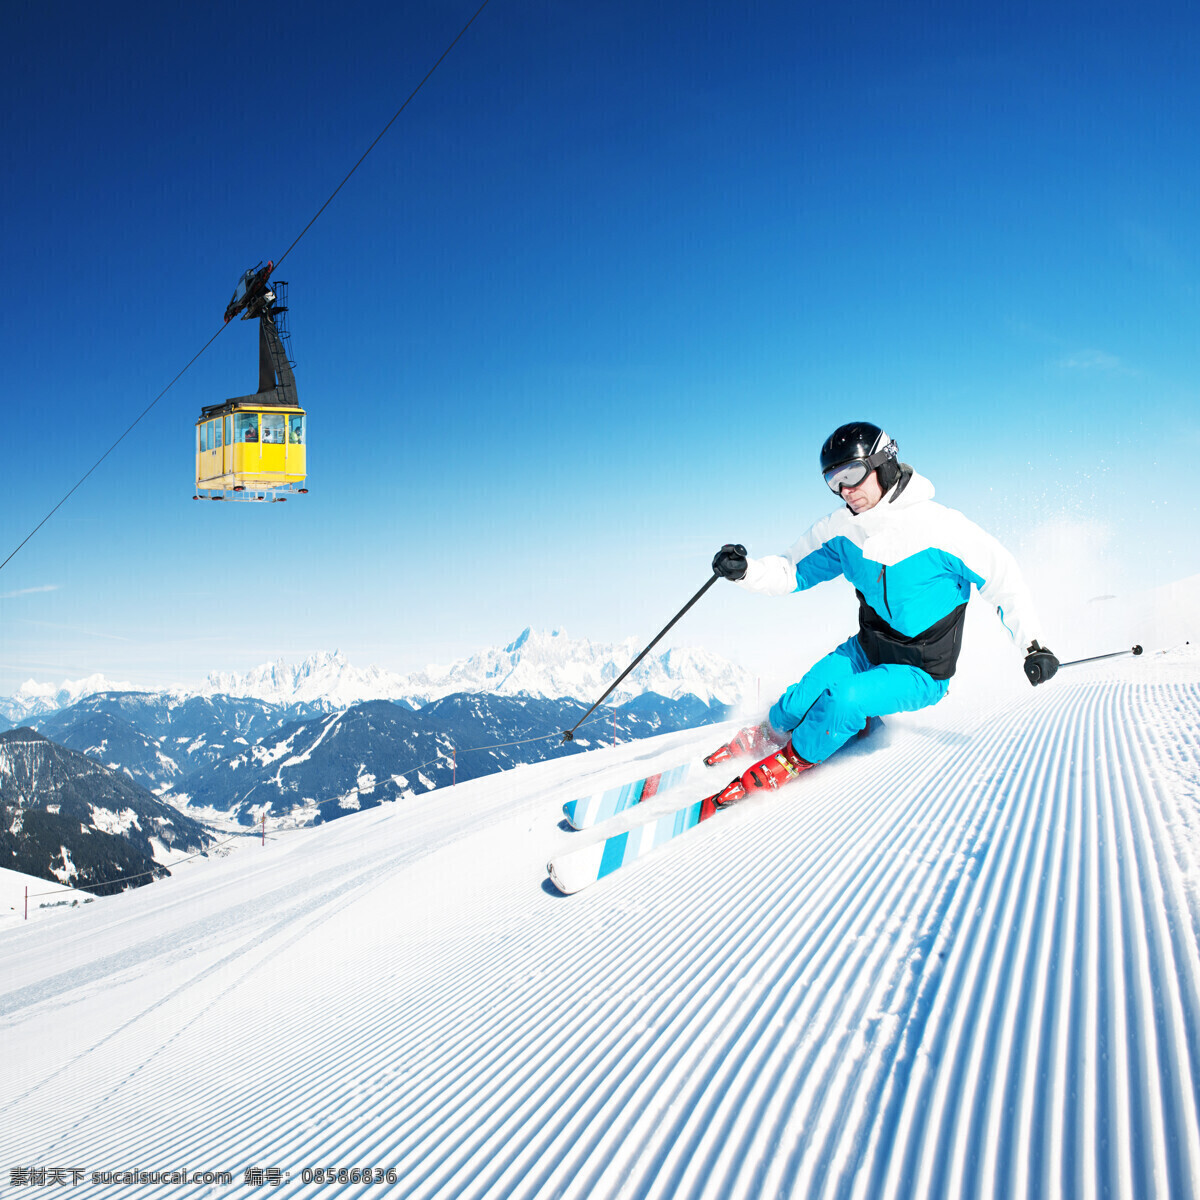 缆车 滑雪 运动员 高山 雪山 运动 雪地 雪花 滑雪板 户外运动 滑雪图片 生活百科